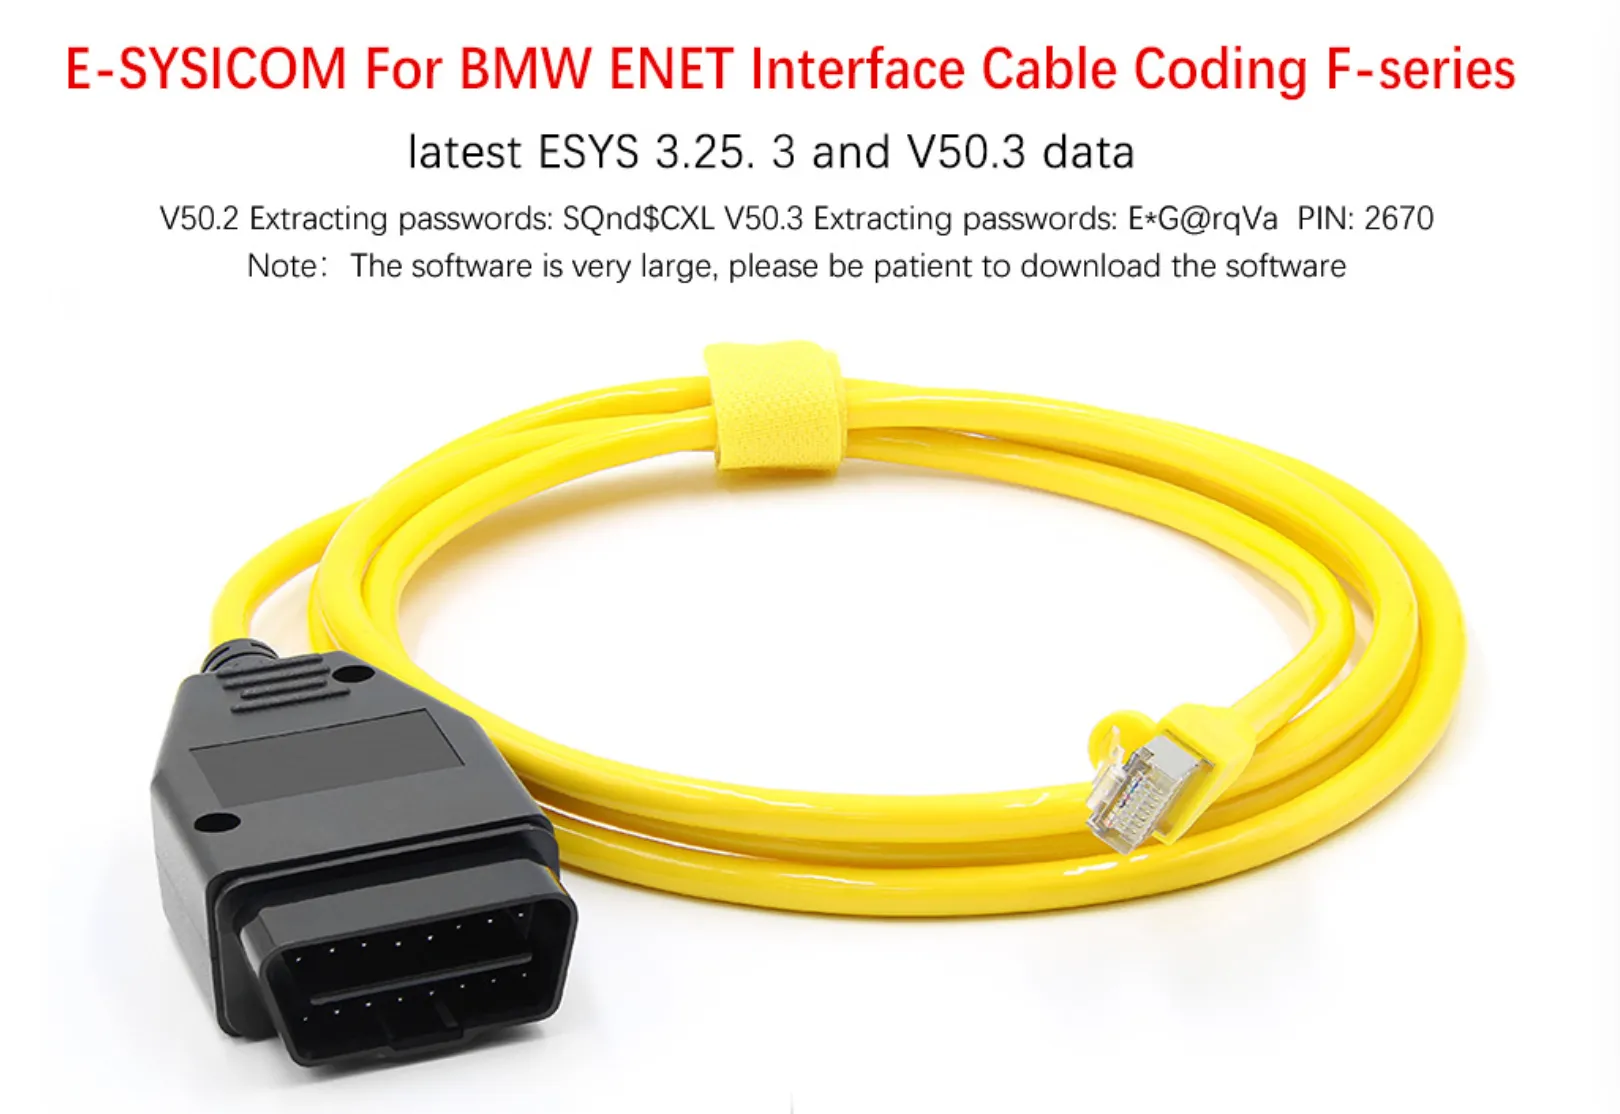 Câble ESYS ENET pour BMW série F rafraîchir les données cachées E-SYS  codage ICOM programmeur ECU OBD OBD2 Scanner outil de Diagnostic de voiture